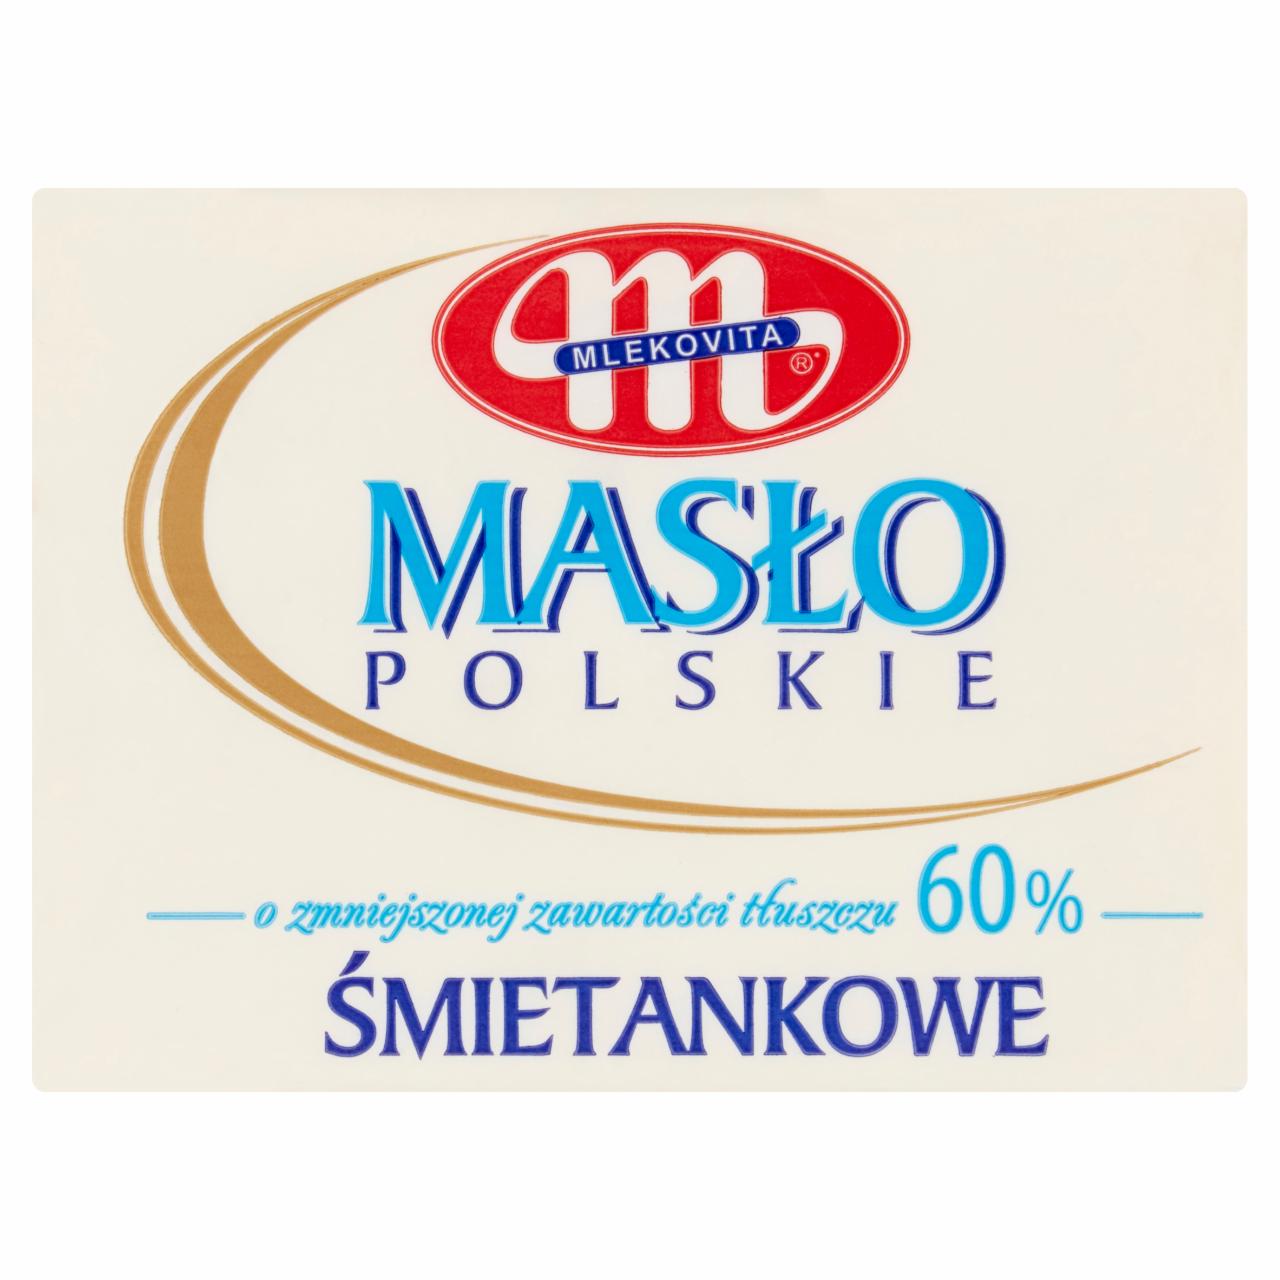 Zdjęcia - Masło Polskie śmietankowe o zmniejszonej zawartości tłuszczu 60% Mlekovita